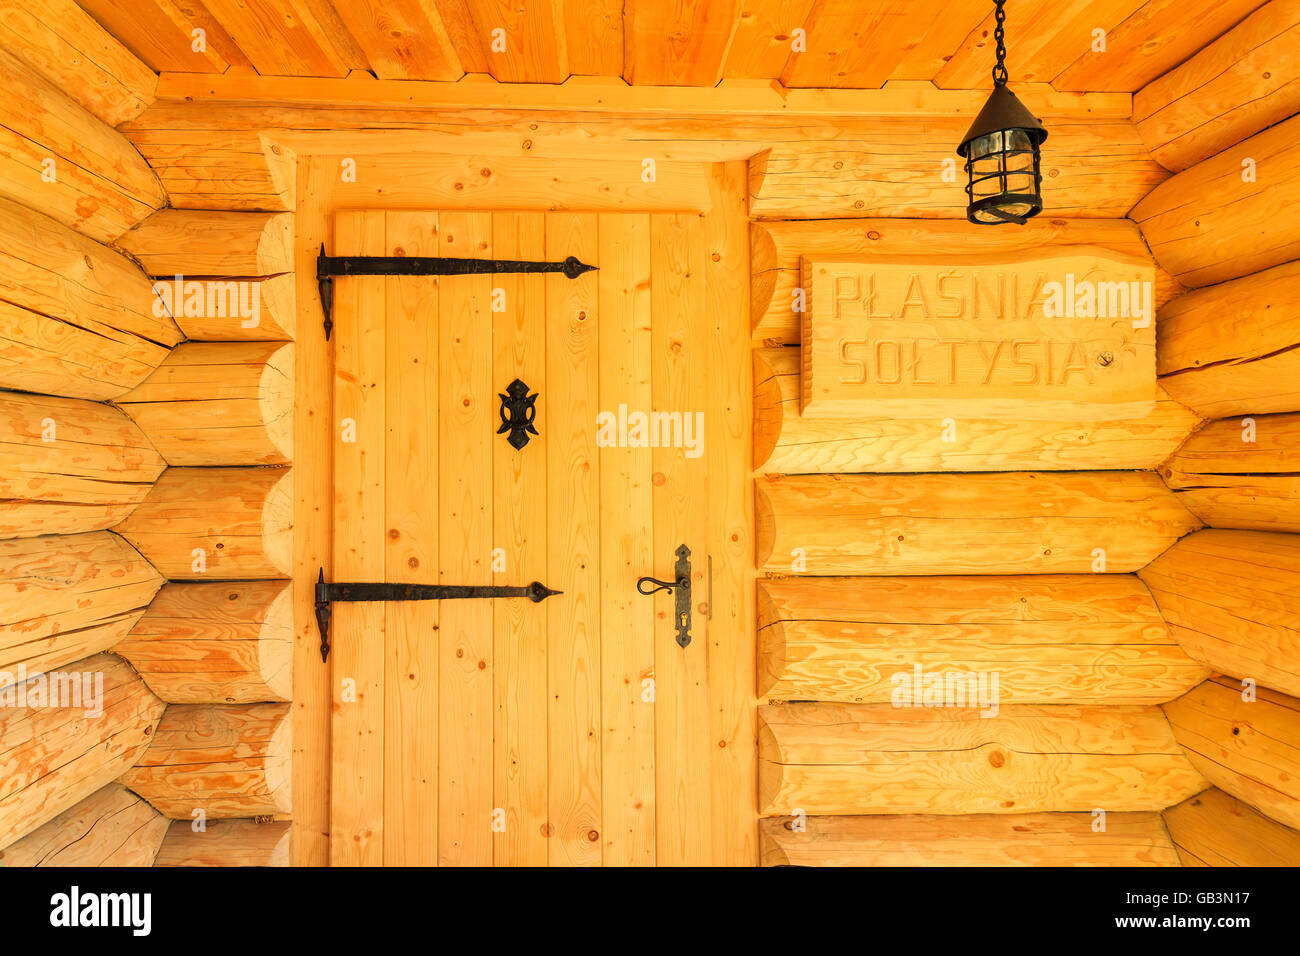 ZAKOPANE, Polen - 6. Juni 2015: Tür Mountain House gebaut von Stückholz, typischen Stil der Architektur in der hohen Tatra regi Stockfoto